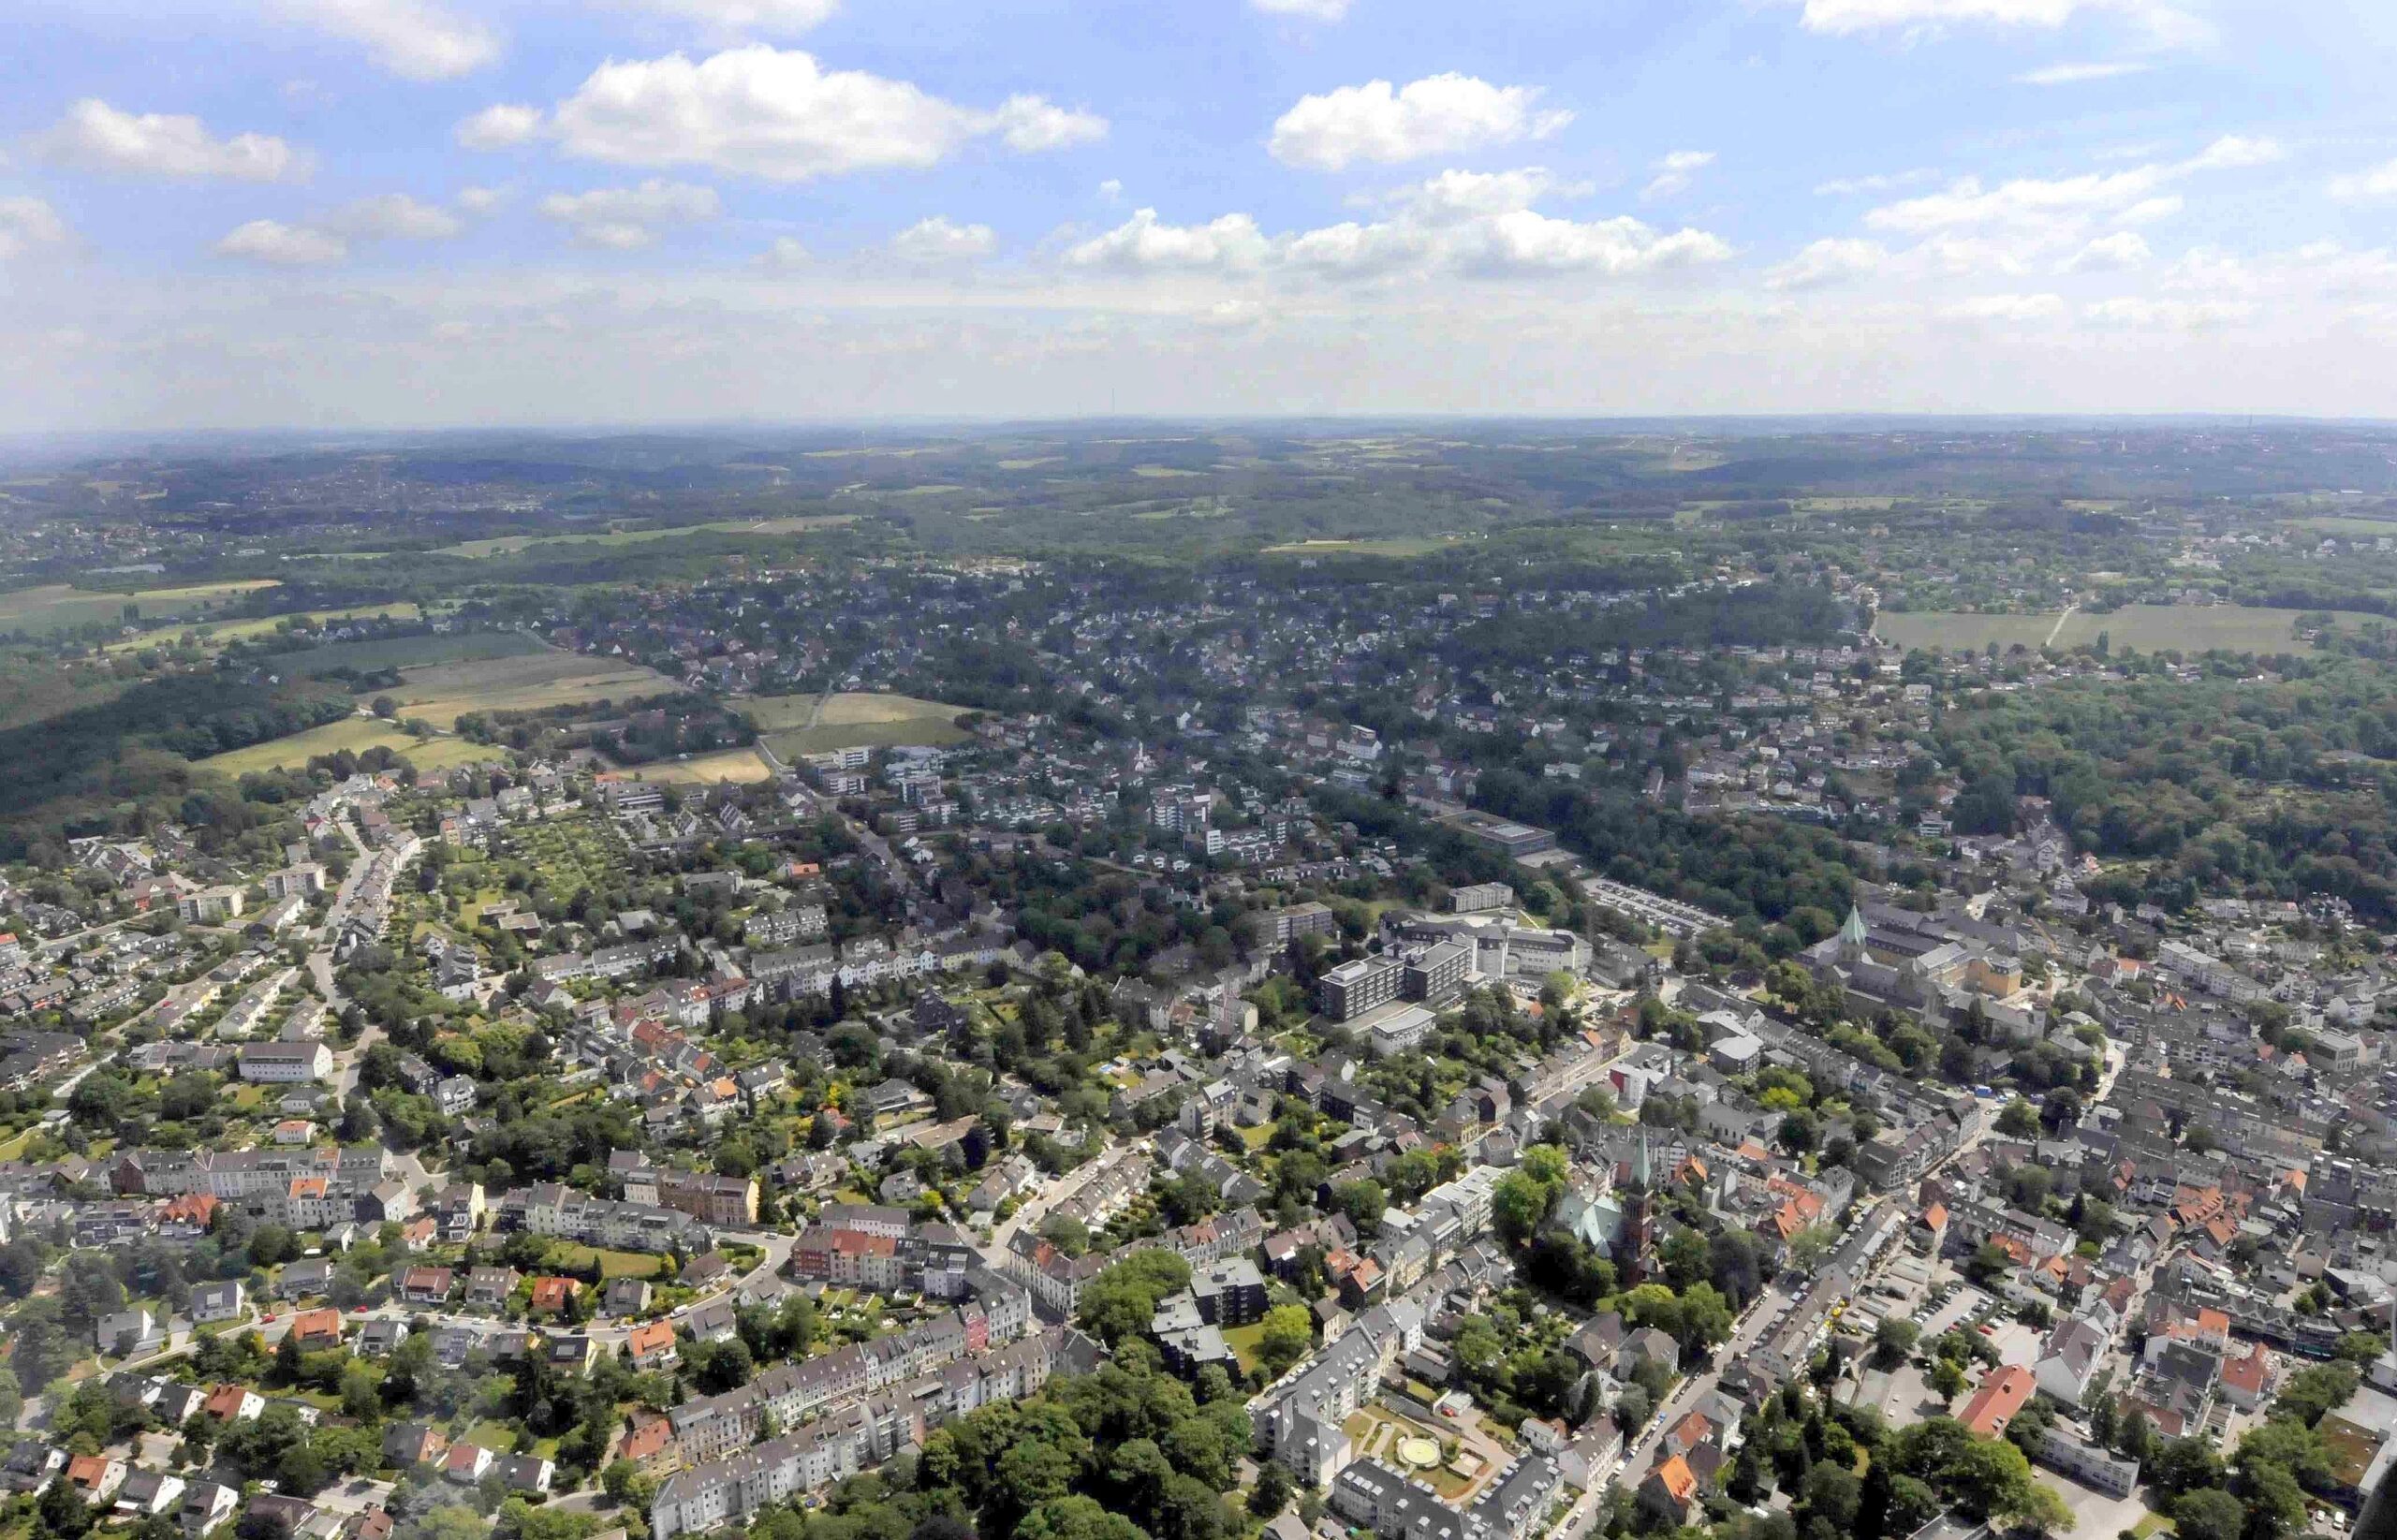 Luftschiffflug über den Mülheimer und Essener Süden. Essen-Werden Foto: Roy Glisson / WazFotoPool 01.06.2011